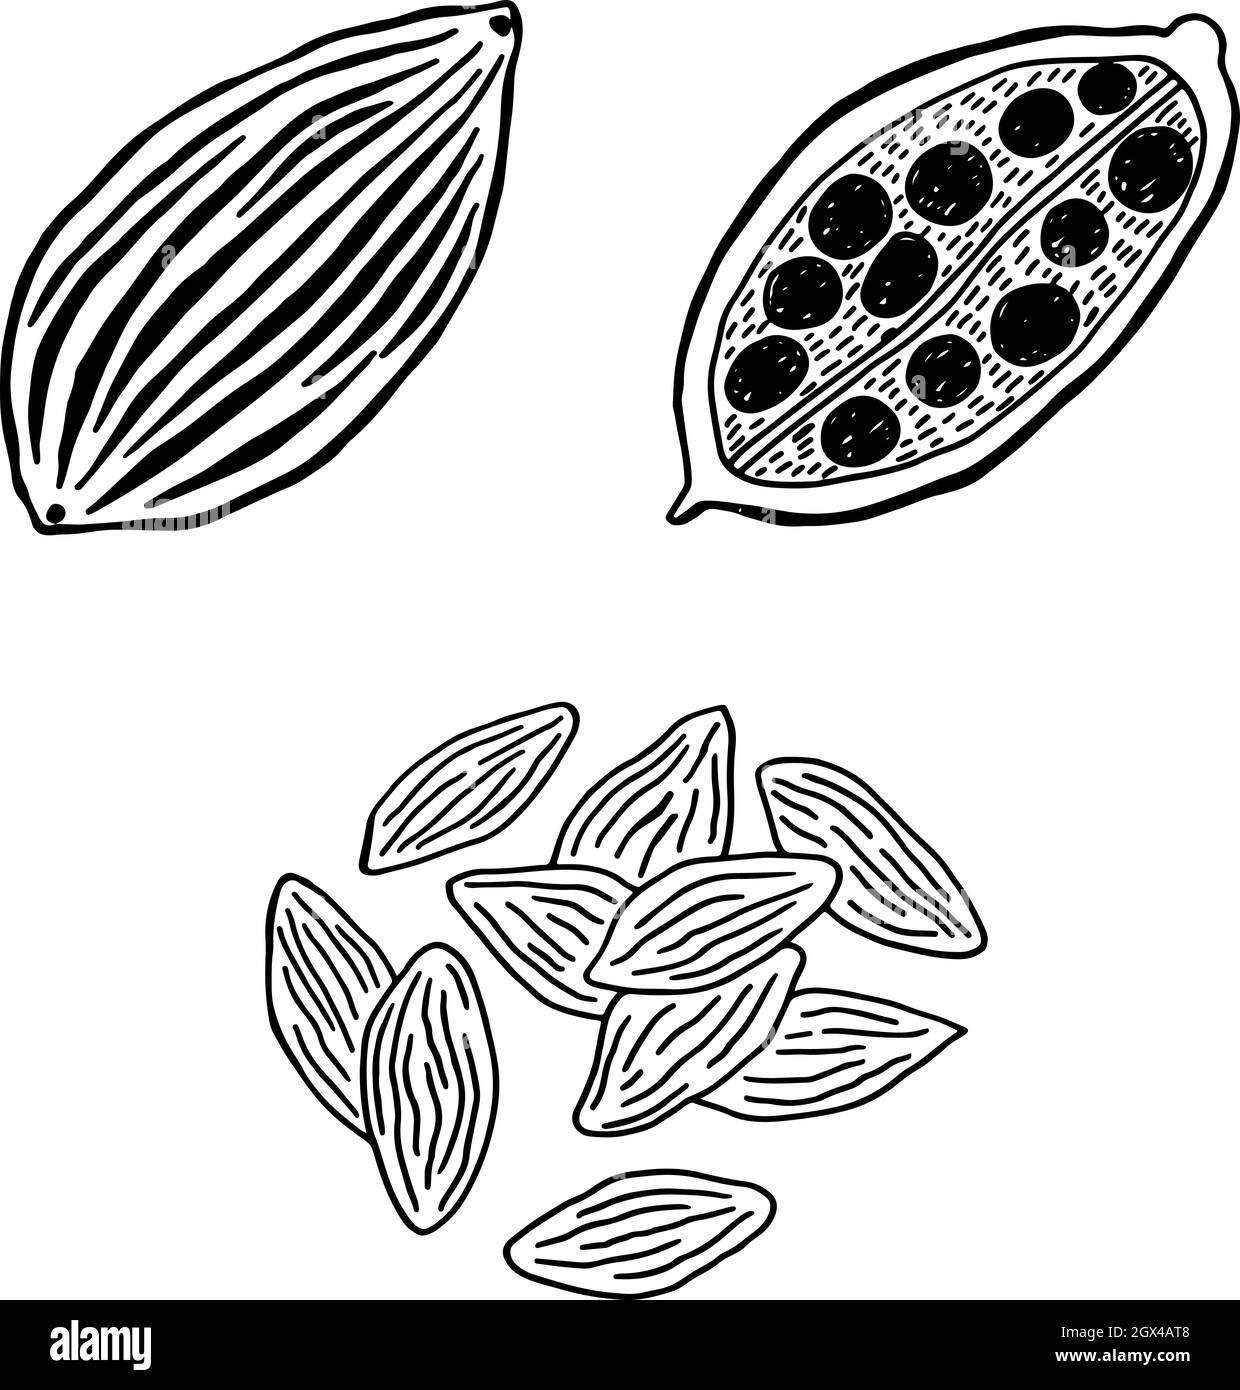 Cardamome - illustration de la ligne aromatisante. Dessin d'un coolé noir et blanc. Dessin à main levée d'herbes aromatiques. Illustration vectorielle. Illustration de Vecteur